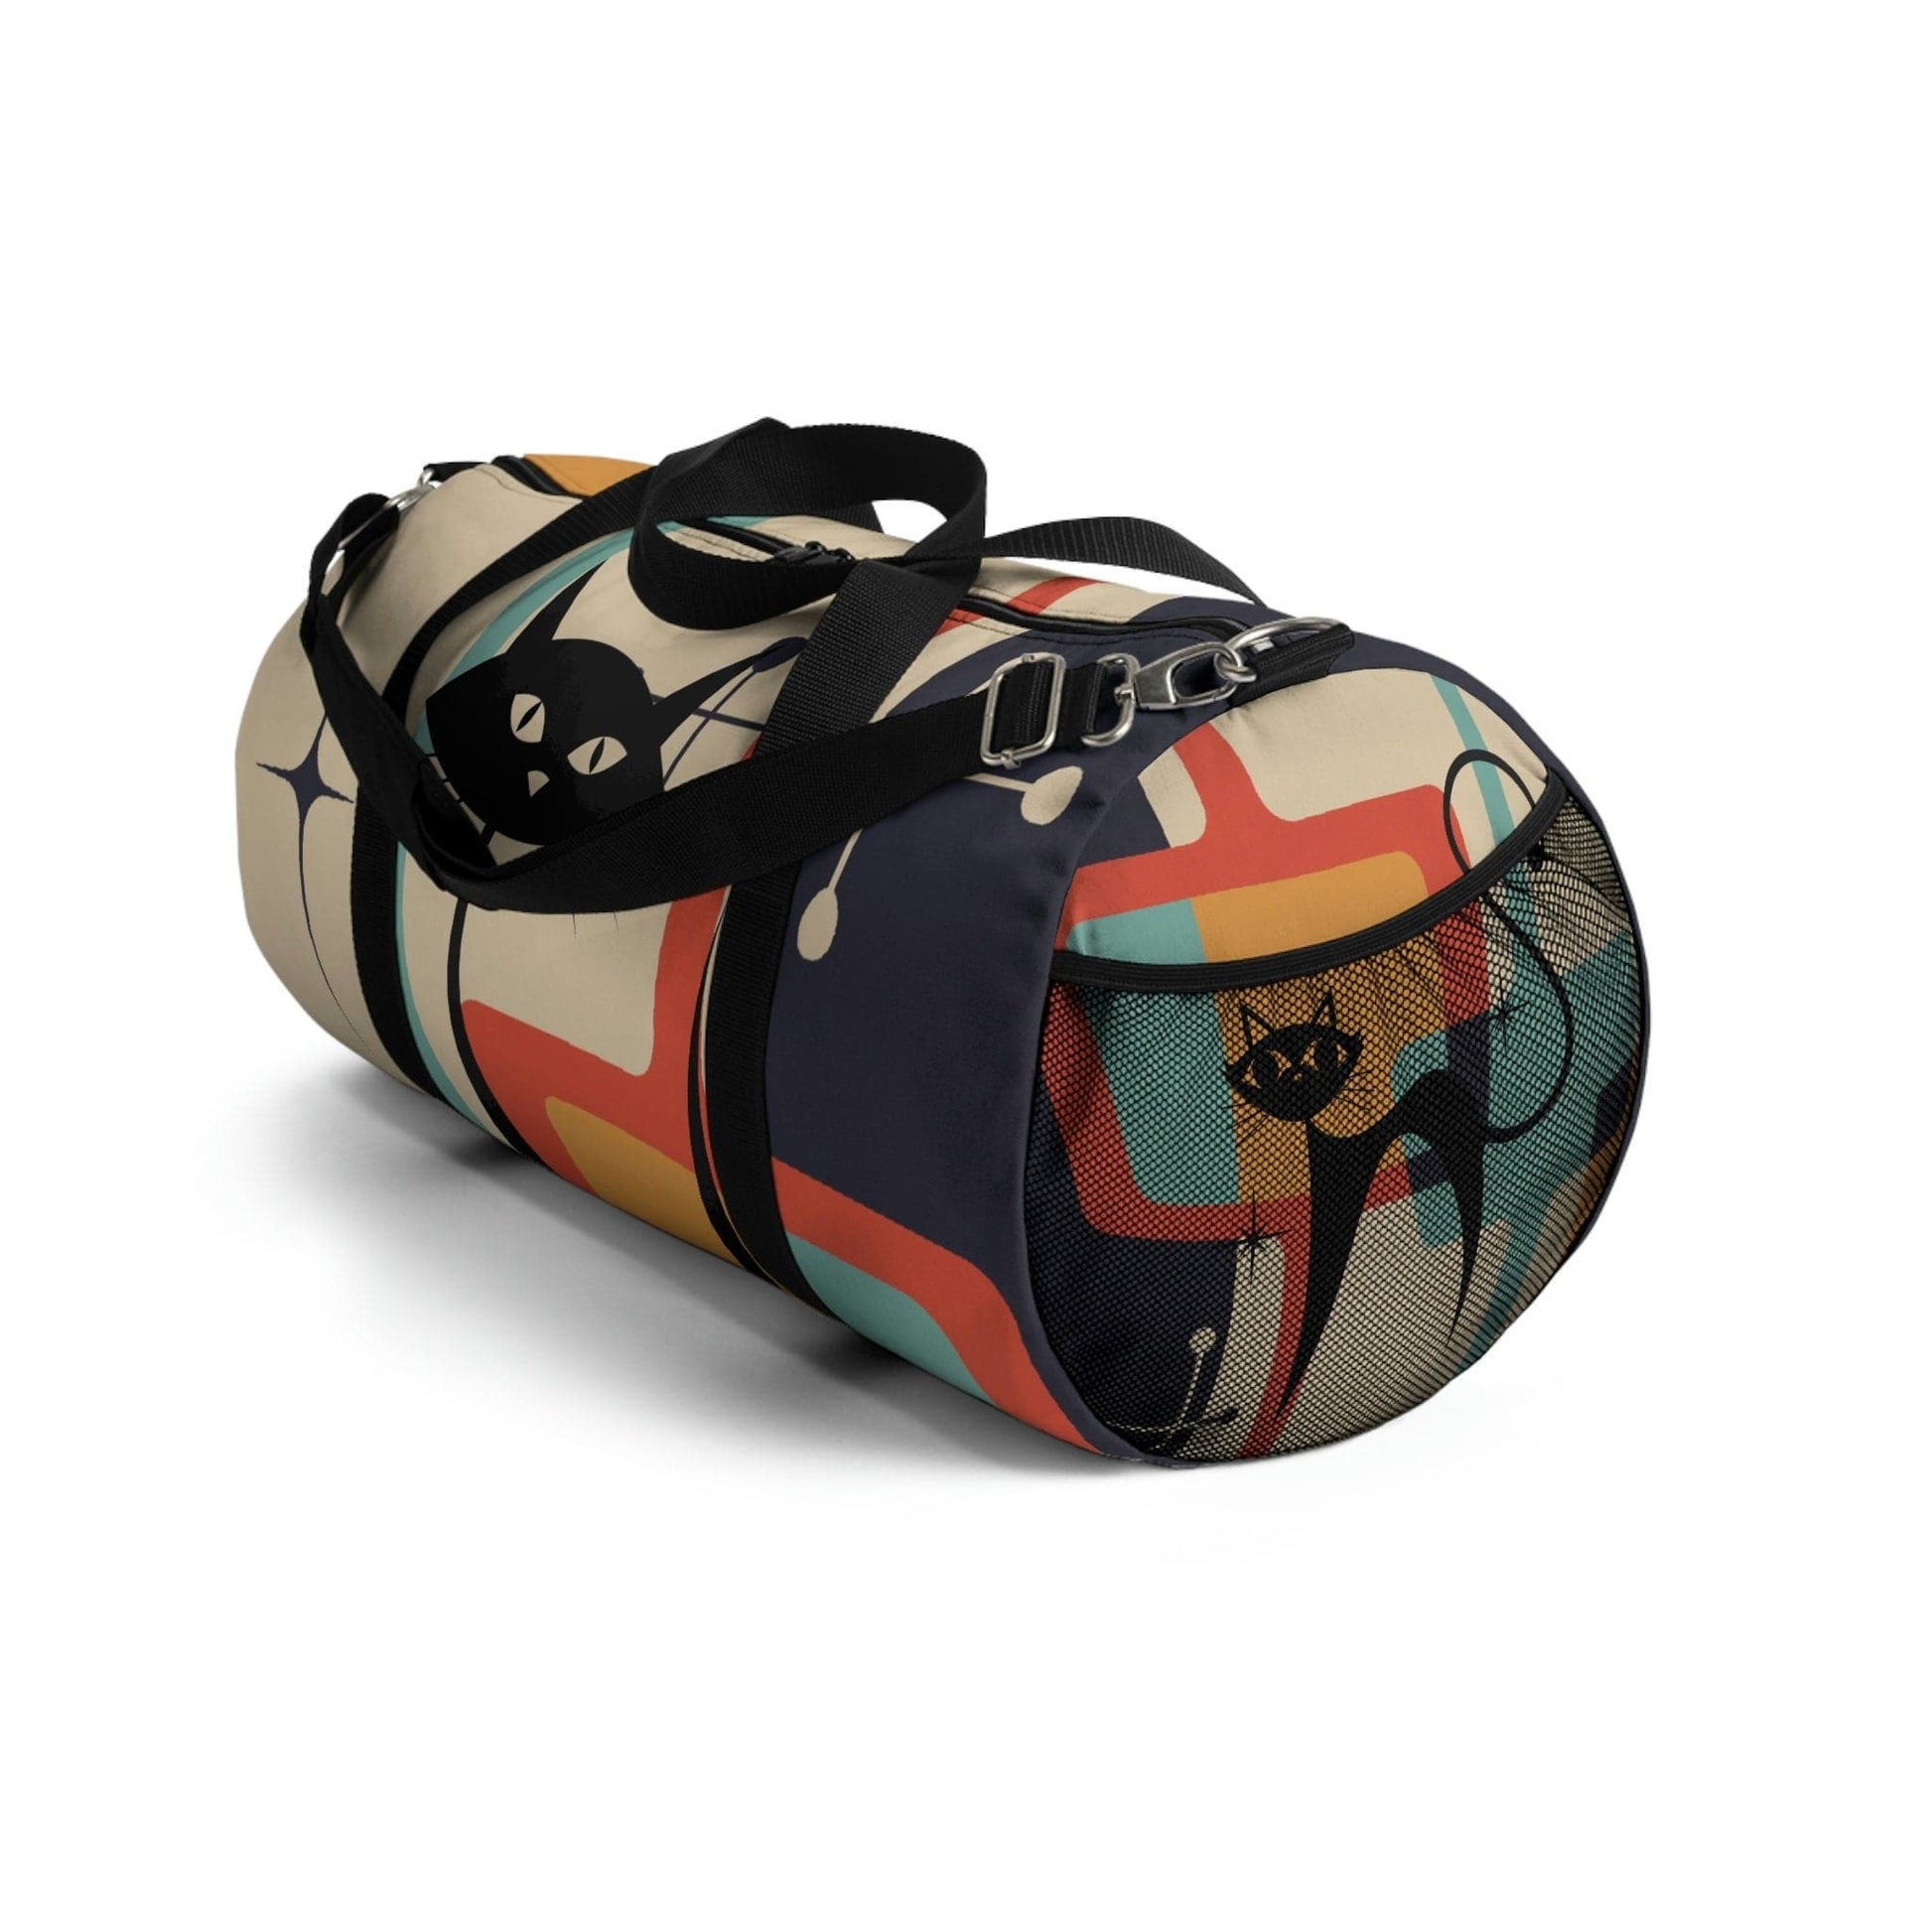 Atomic Cat, Mid Century Modern, Luggage, Travel Bag, Weekender, Retro